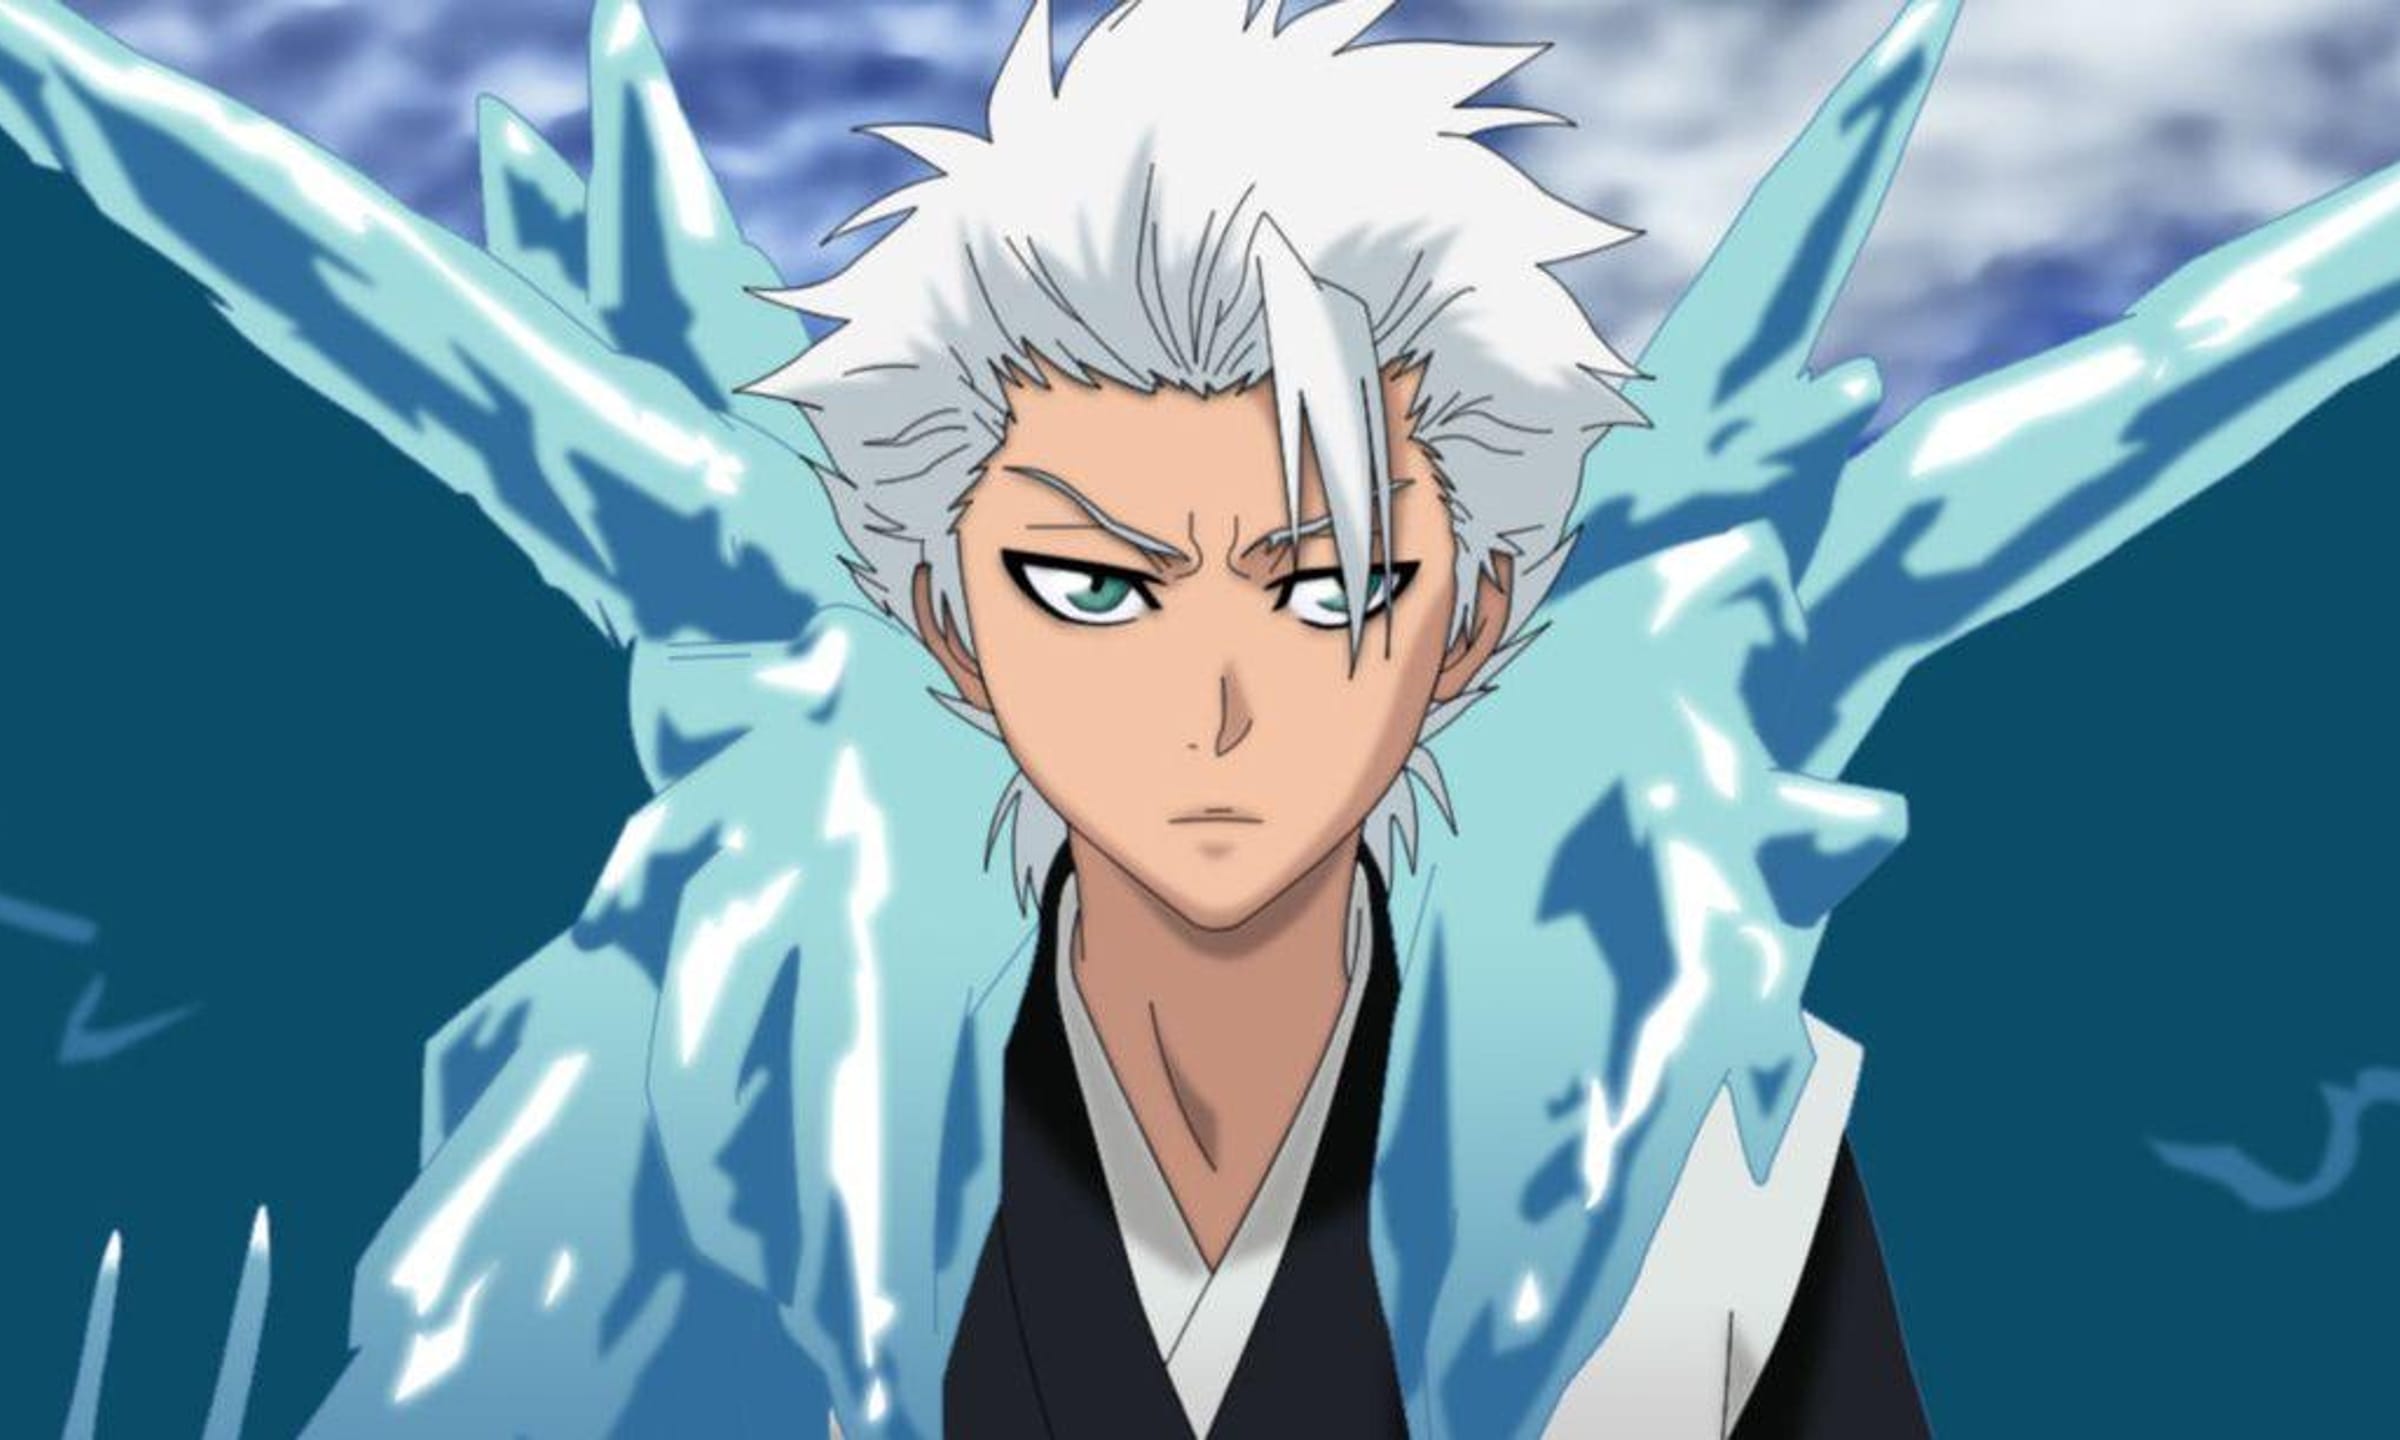 Super Blue Hair Anime Warrior